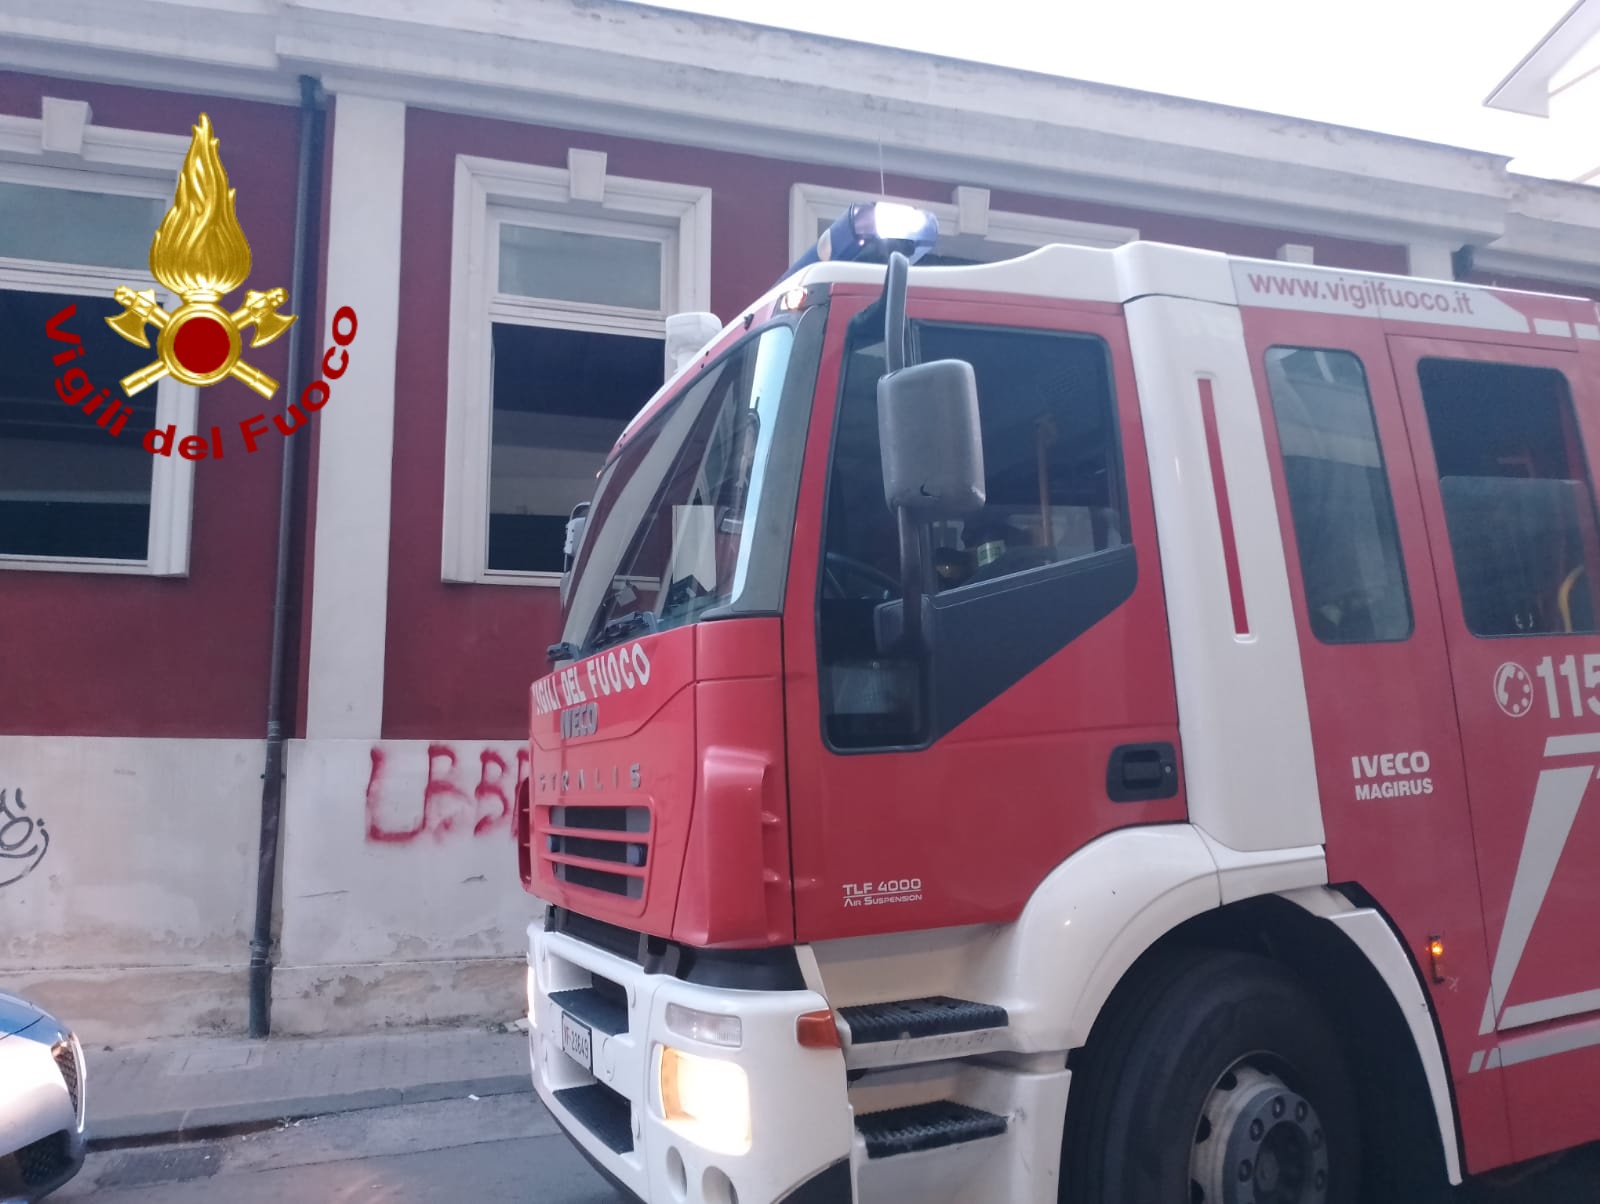 Avellino| Incendio nell’ex Asilo Patria e Lavoro, pompieri avvertiti dai passanti